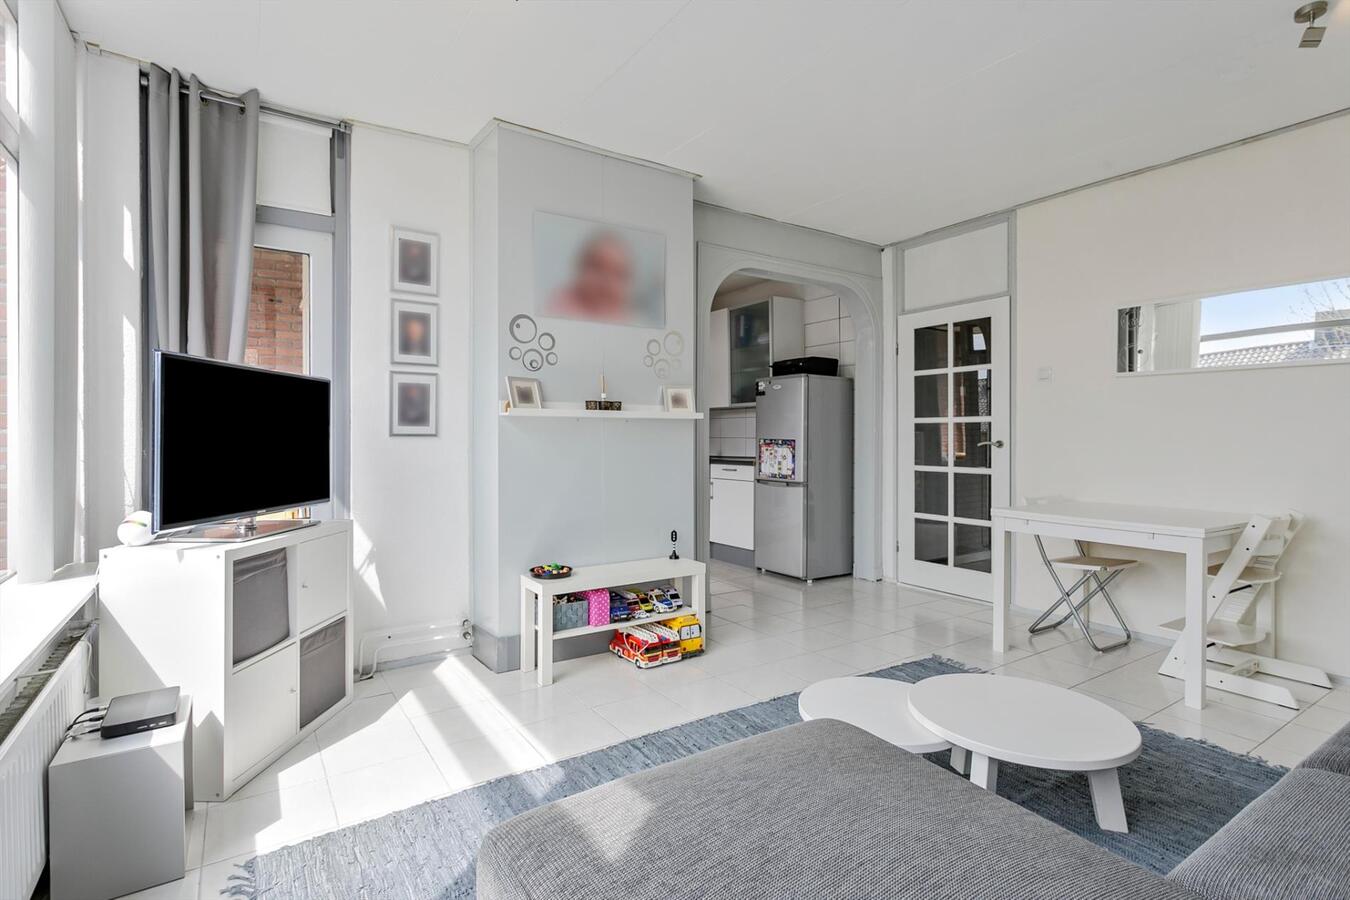 Appartement verkocht in Papendrecht